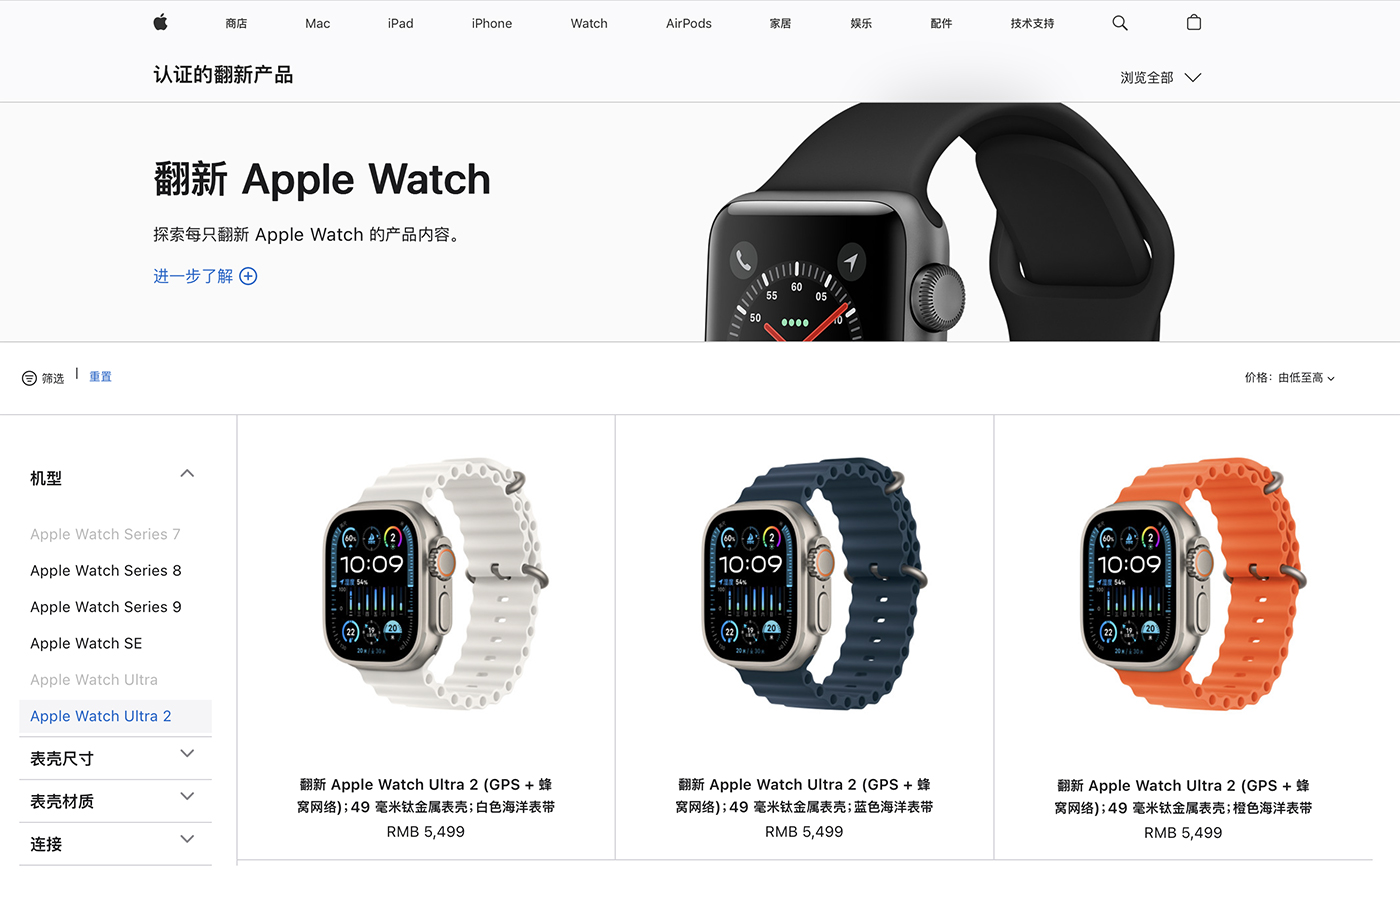 Apple Watch erstmals außerhalb der USA als Refurb-Angebot